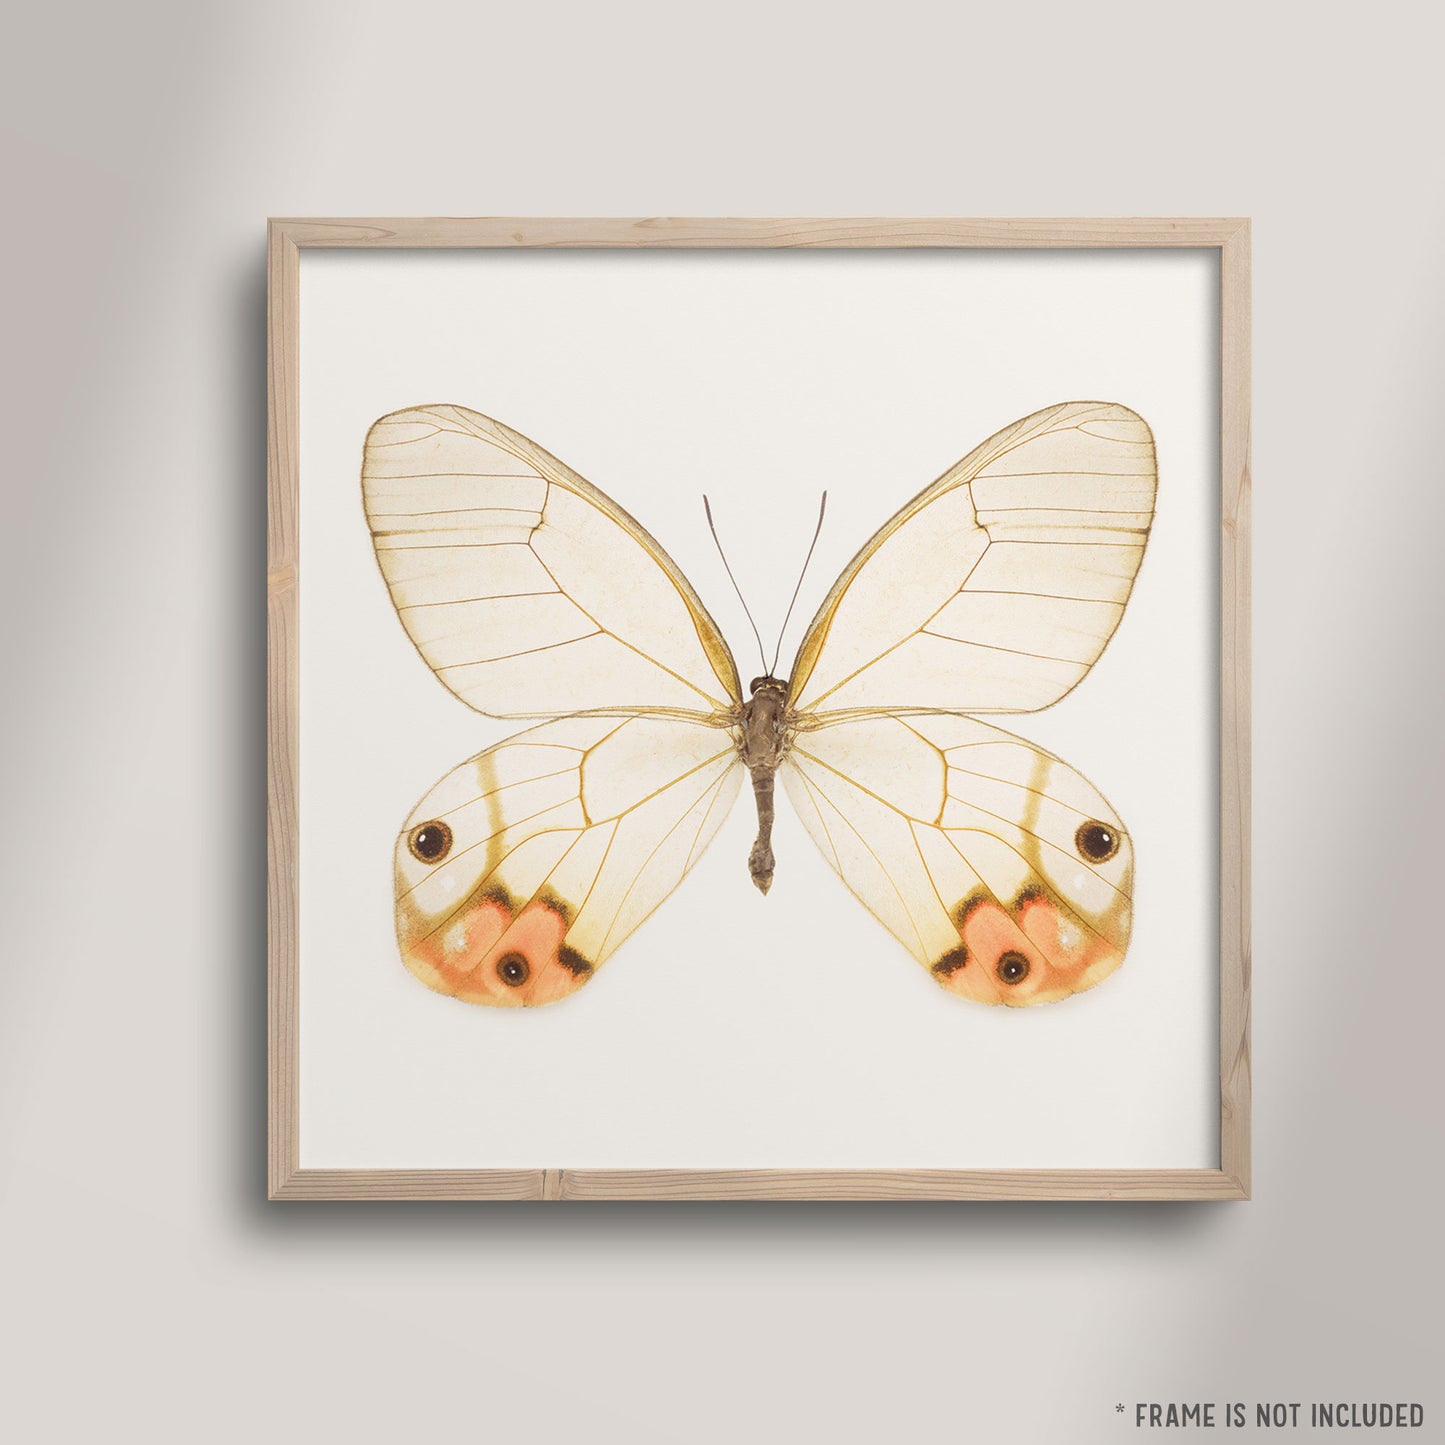 SQ Butterfly No. 2 - Orange Glasswing Butterfly